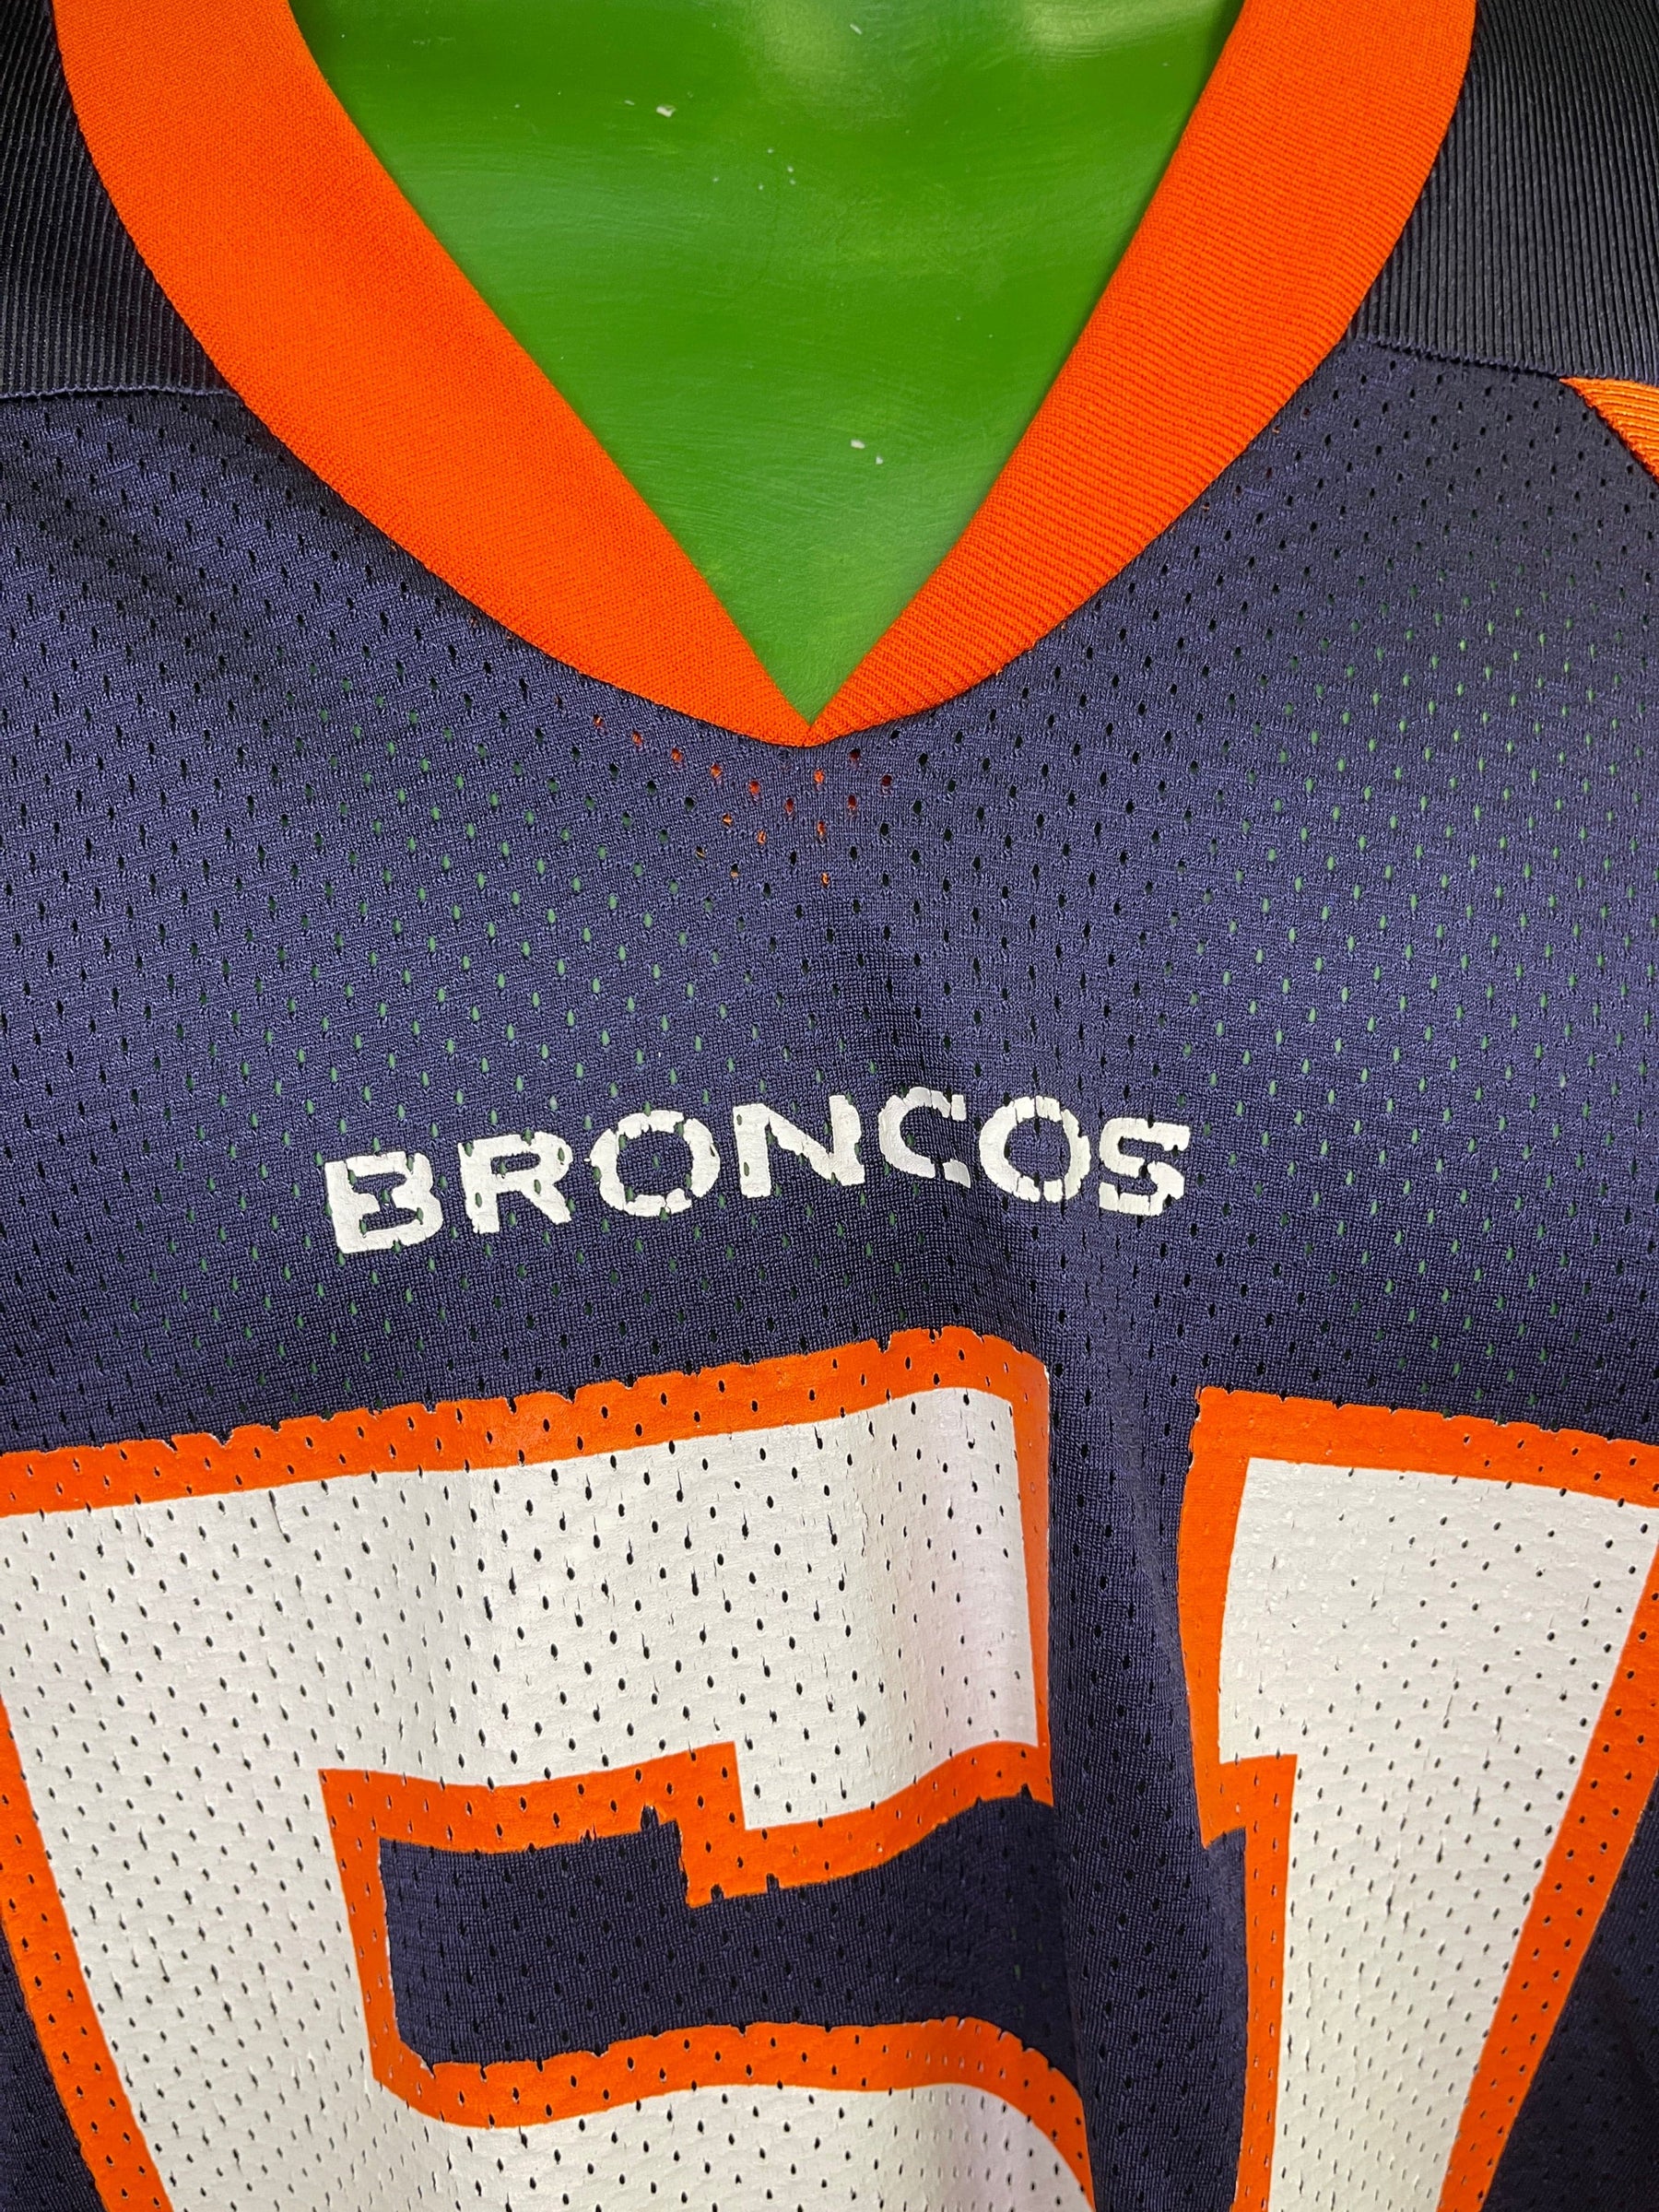 NFL Denver Broncos John Mobley #51 Logo Athletic Jersey Men's Large